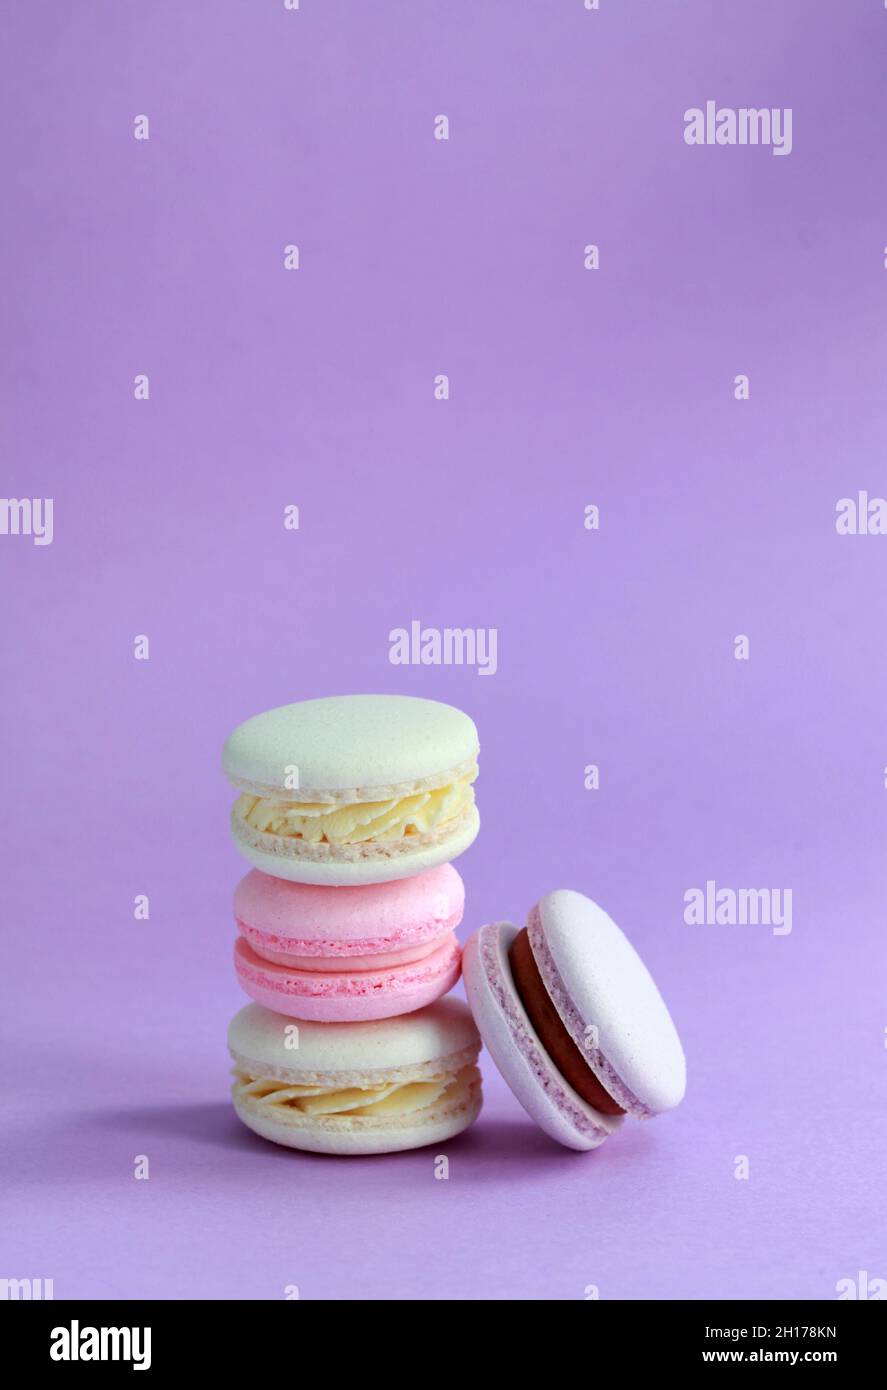 Macaron ou macaron sur fond lilas, biscuits aux amandes colorés avec différentes garnitures Banque D'Images